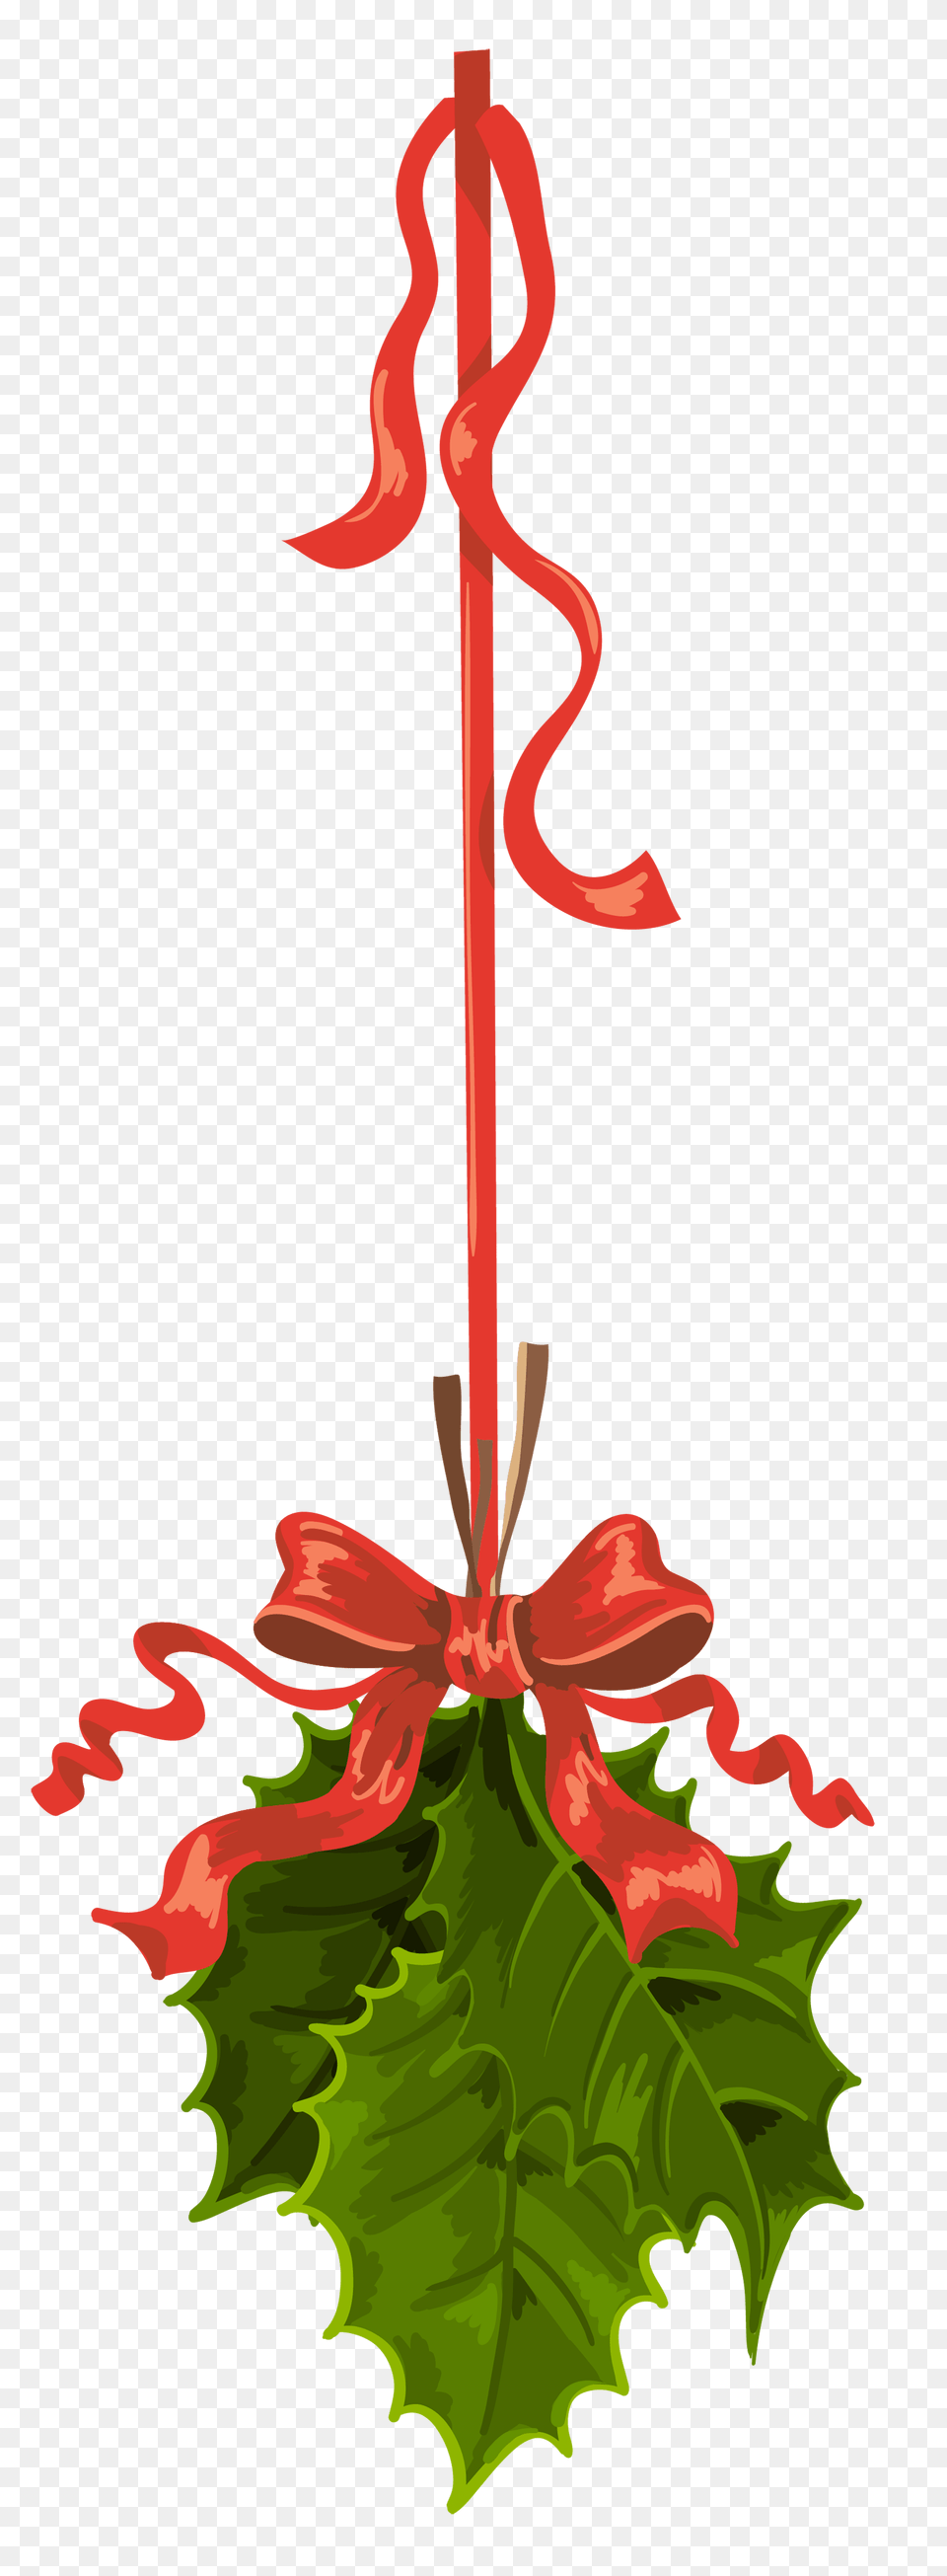 Graphic Design, Flower, Leaf, Plant, Rose Free Png